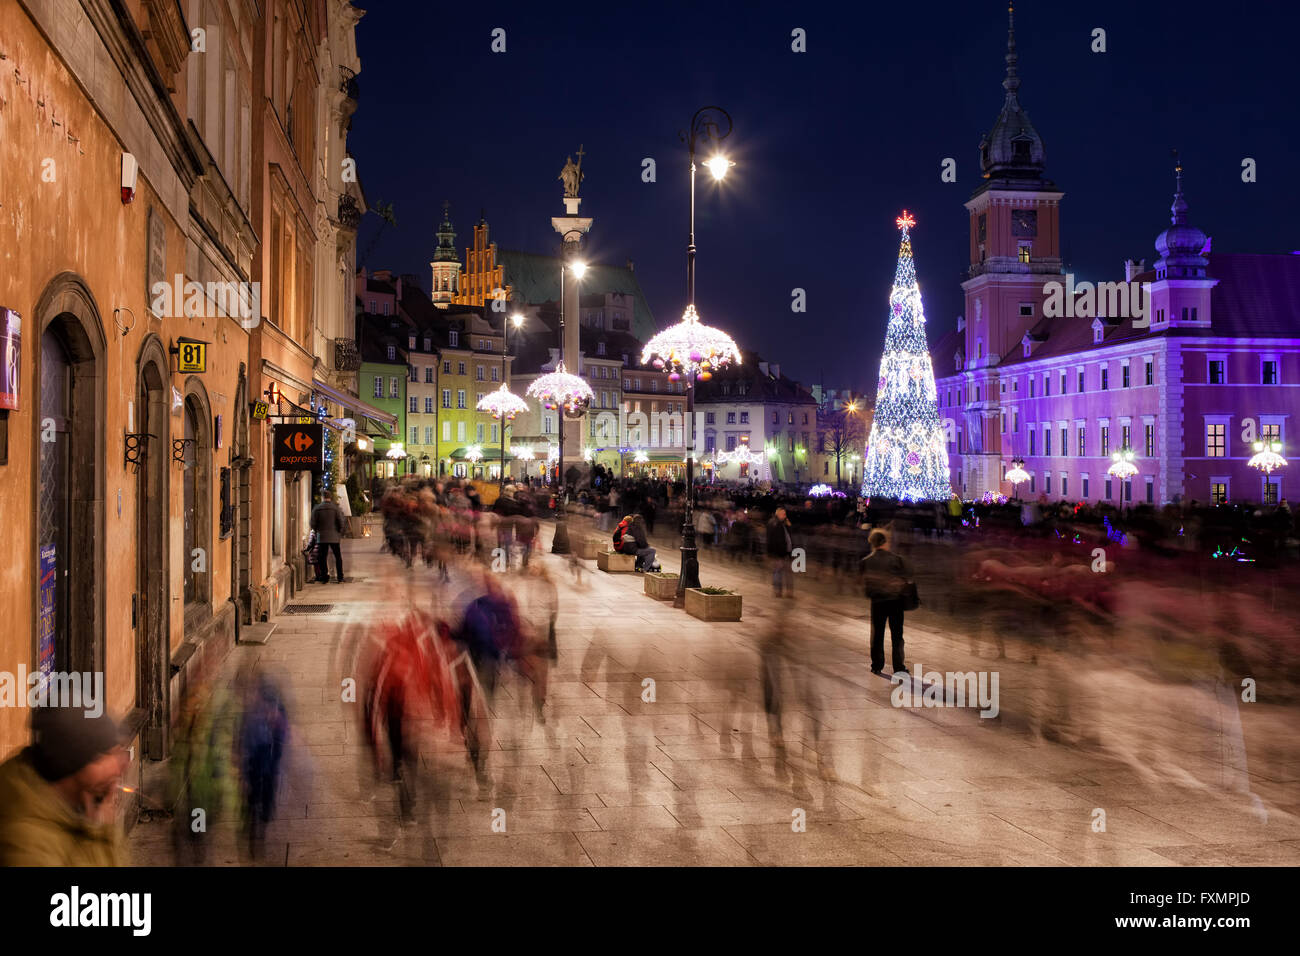 Warschau bei Nacht in Polen, Altstädter Ring, Königsschloss, Menschen, Touristen Menschenmenge, Städtereise, Stadtleben, Weihnachtszeit Stockfoto